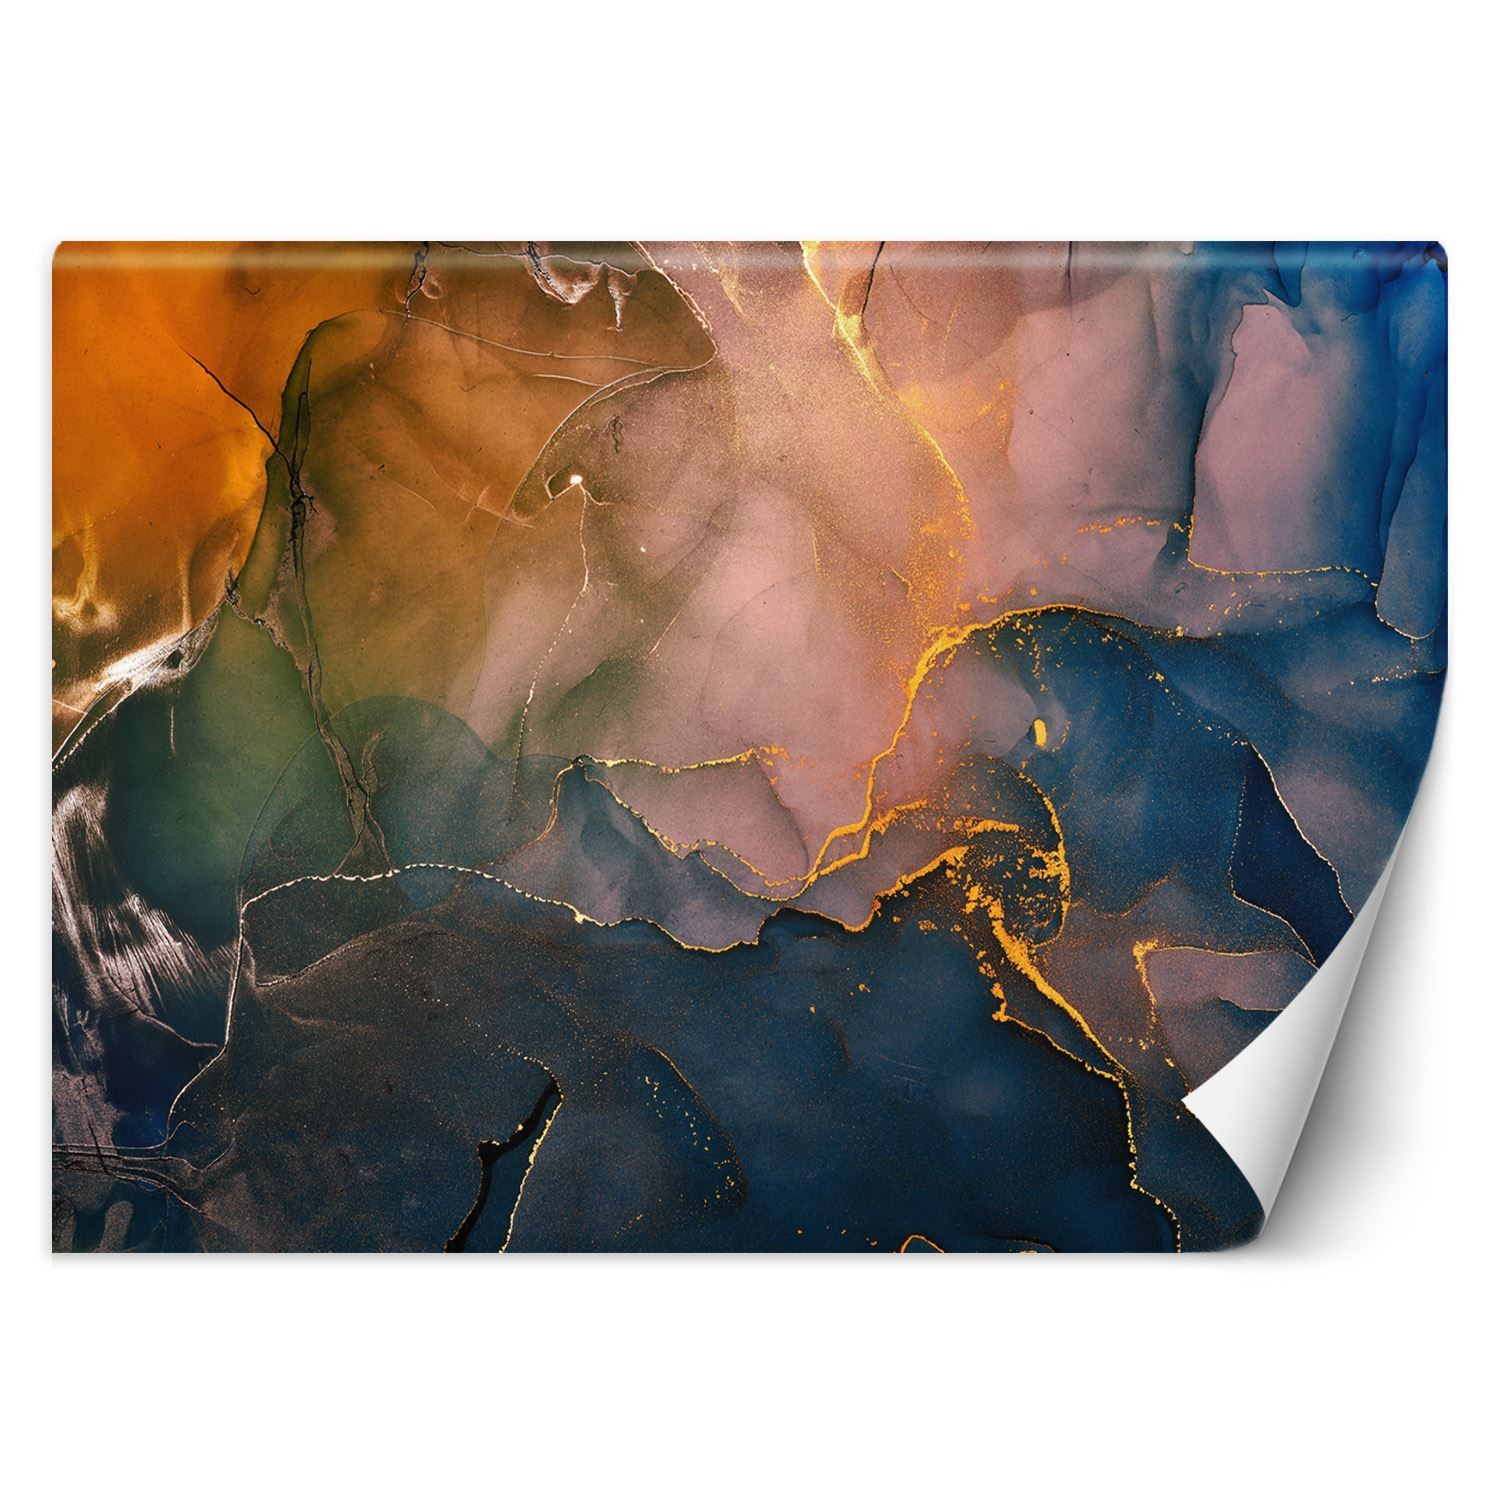 Trend24 – Behang – Kleurrijke Abstractie – Behangpapier – Fotobehang 3D – Behang Woonkamer – 450x315x2 cm – Incl. behanglijm